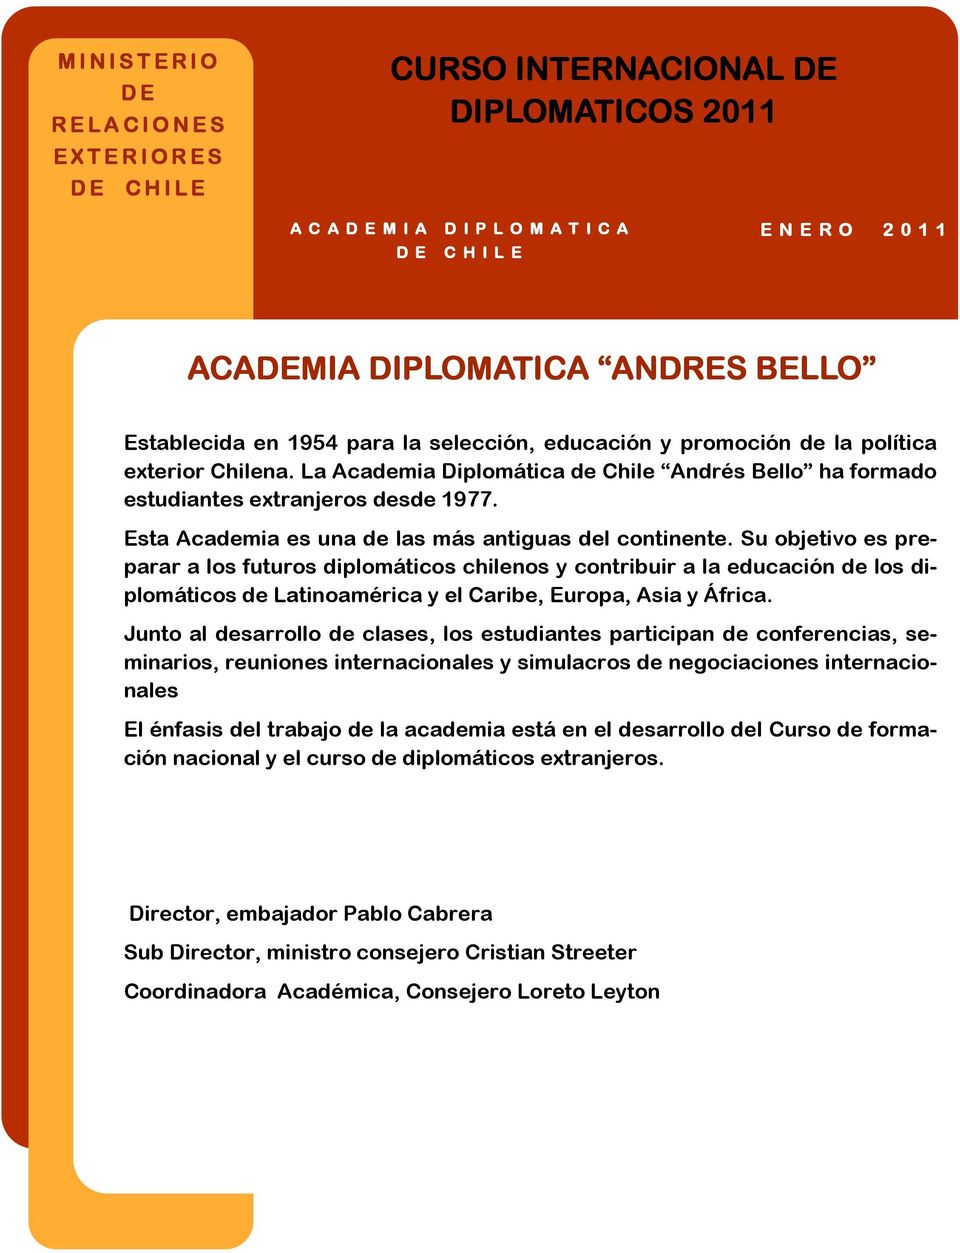 La Academia Diplomática de Chile Andrés Bello ha formado estudiantes extranjeros desde 1977. Esta Academia es una de las más antiguas del continente.